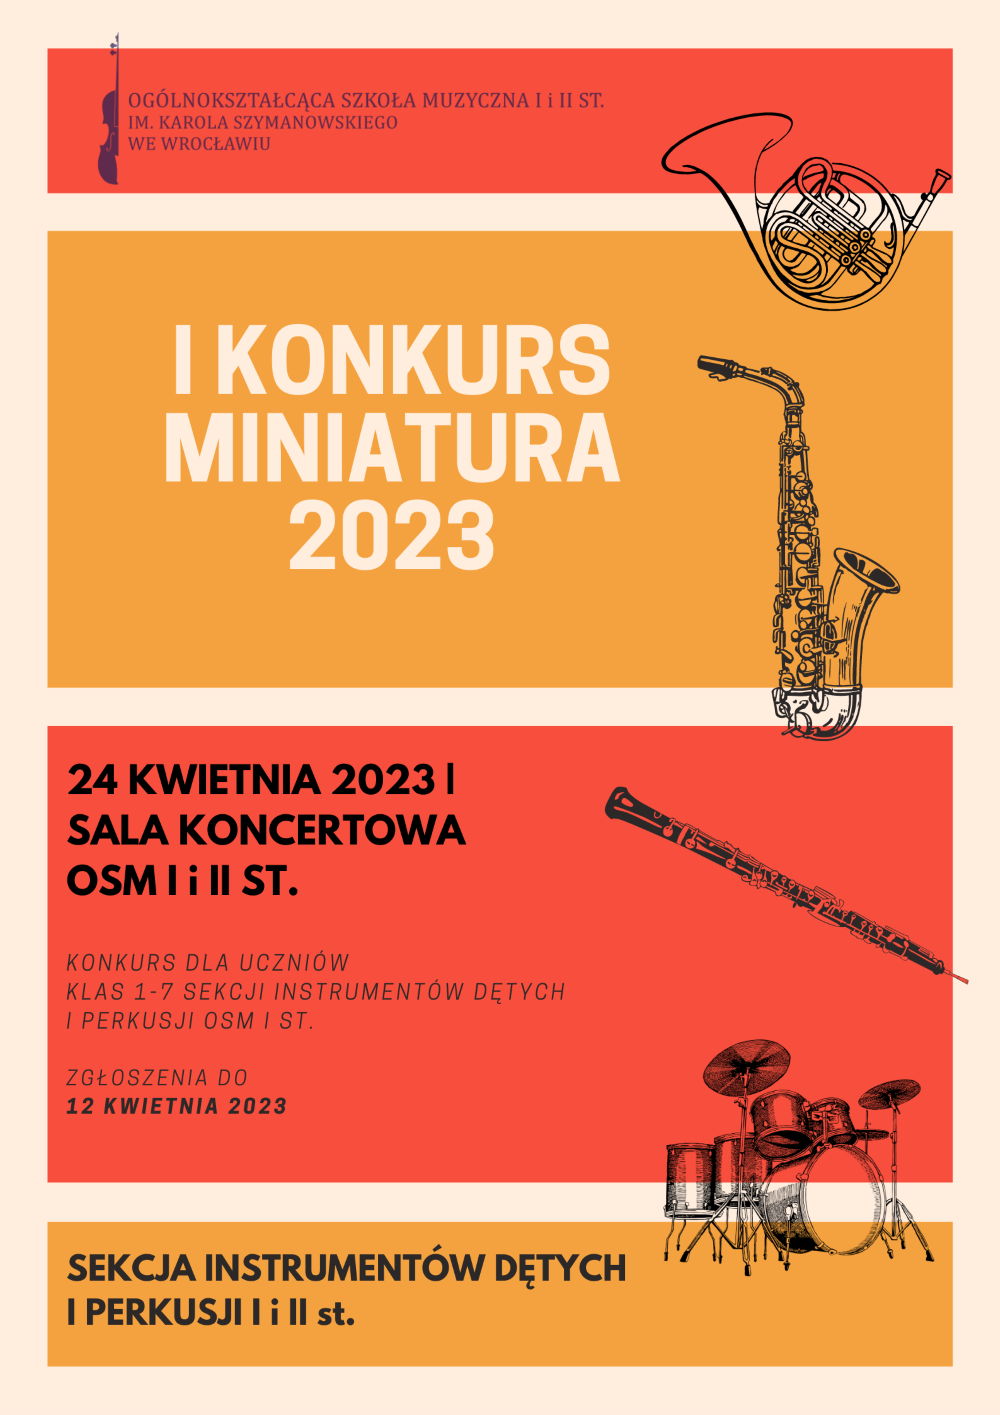 plakat w tonacji czerwono-pomarańczowej, zawiera grafiki instrumentów dętych oraz logo szkoły i napisy:"I Konkurs Miniatura 2023", "24 kwietnia/sala koncertowa"